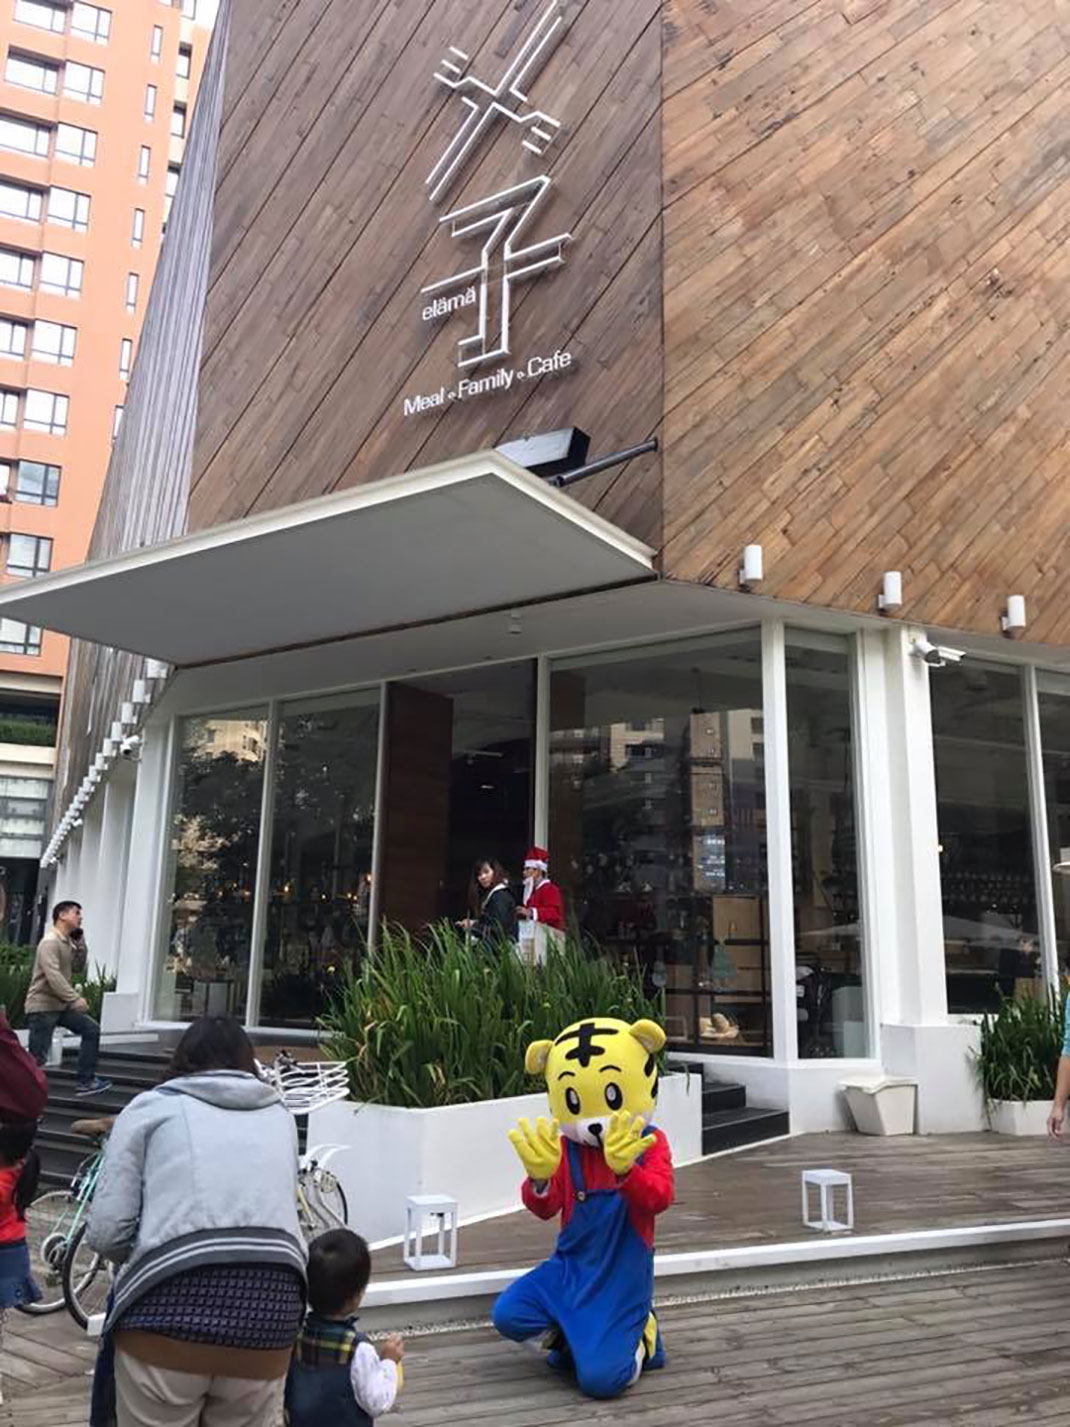 餐厅设计,VI设计,logo设计,日本料理,寿司,餐饮空间,北京,上海,广州,视觉餐饮